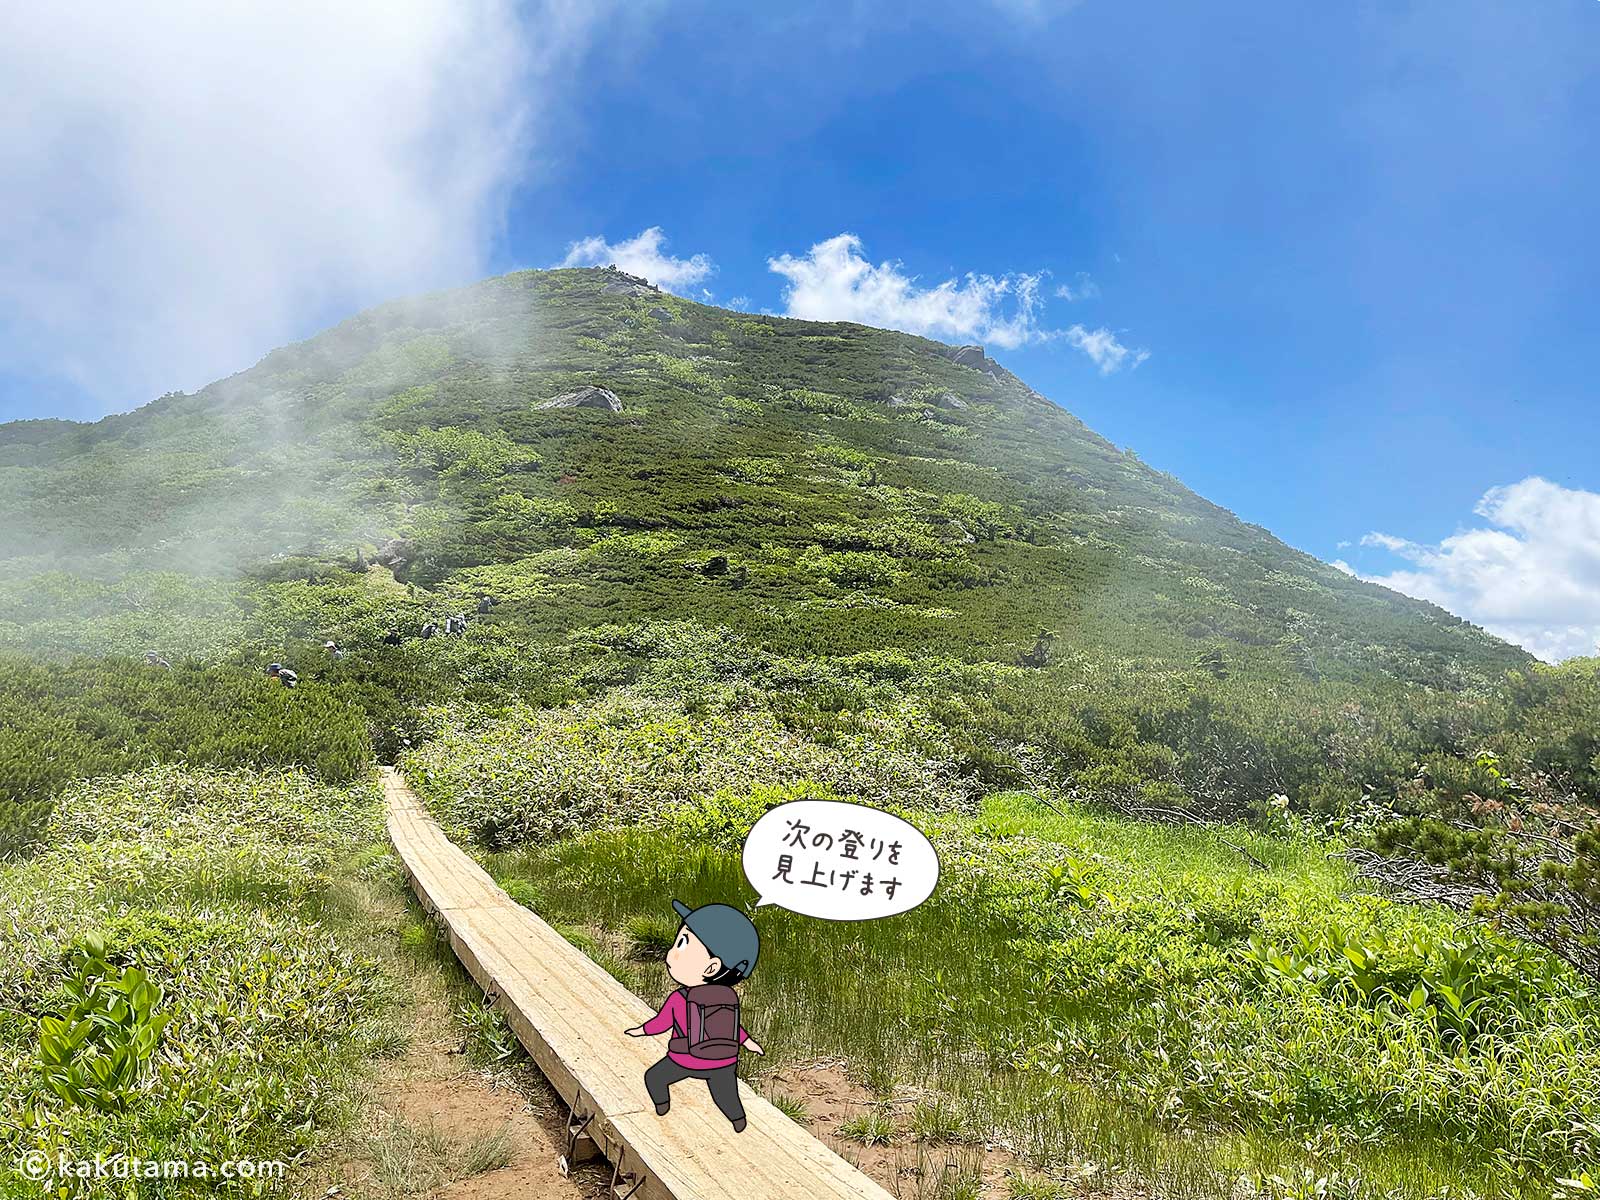 柴安嵓と俎嵓のコルにいる写真と登山者のイラスト